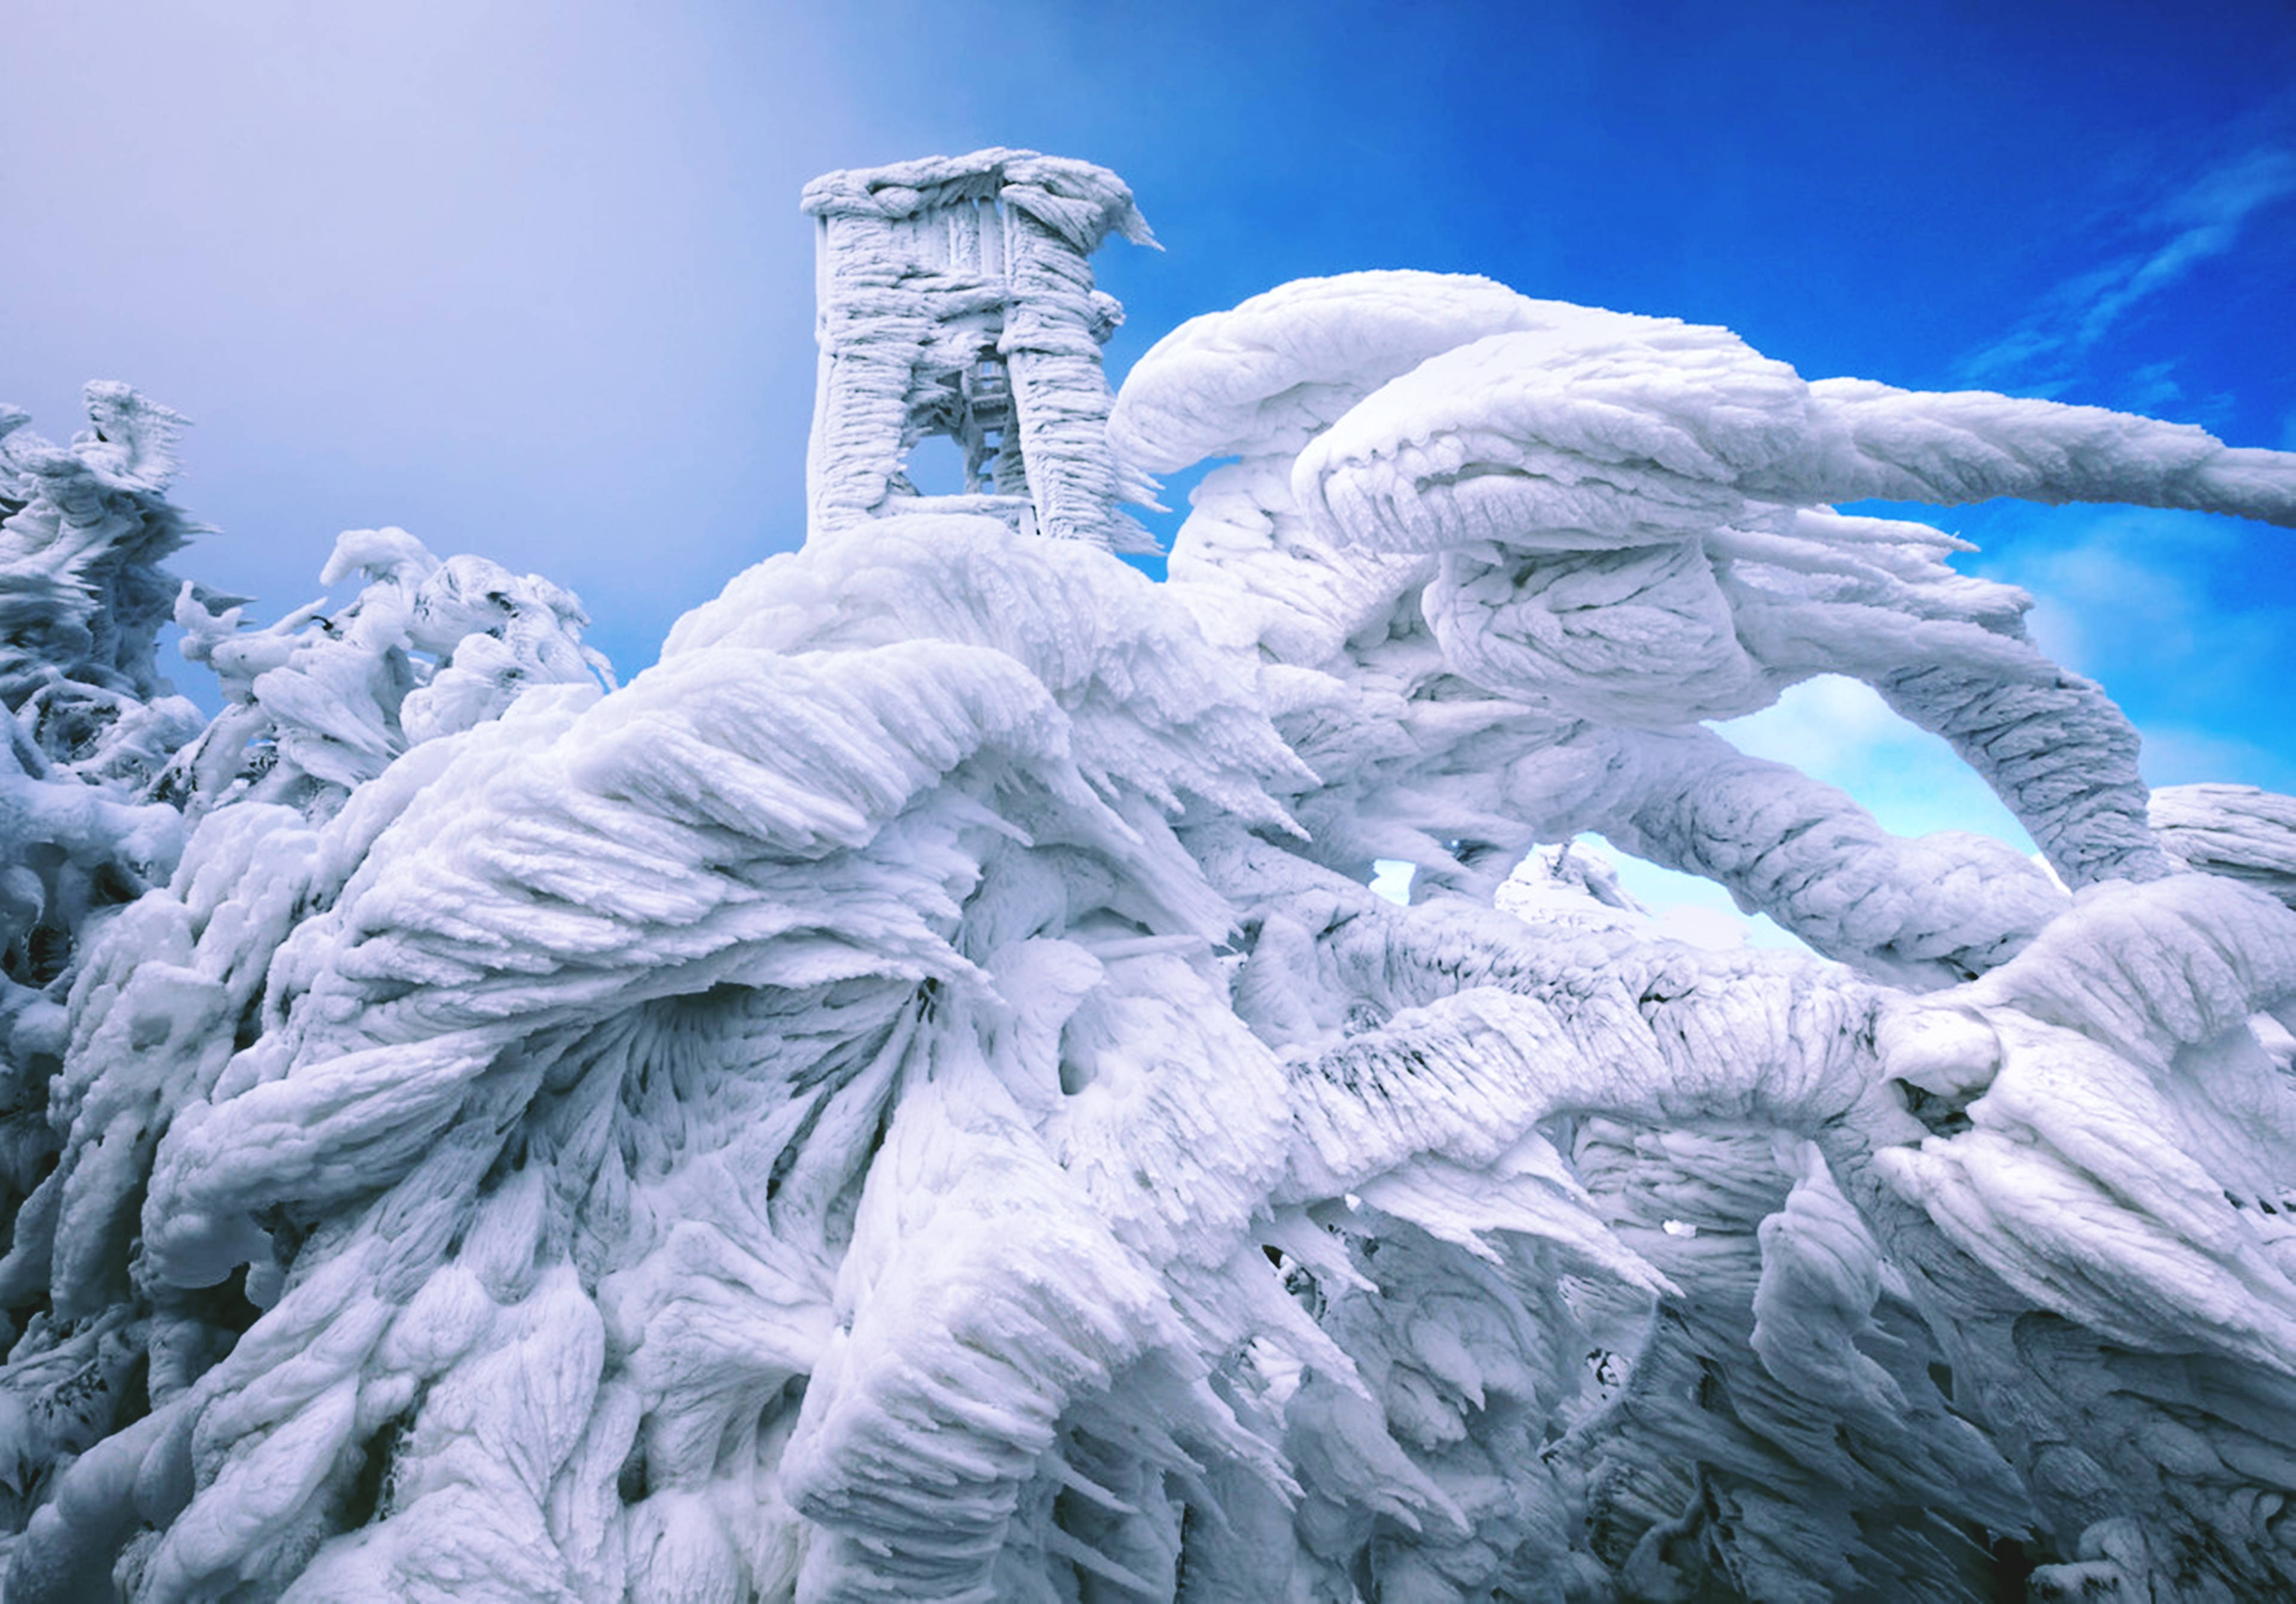 Обычное невероятное. Ледяные образования на вершине горы в Словении. Ледяные скульптуры. Необычные фотографии. Шедевры природы.